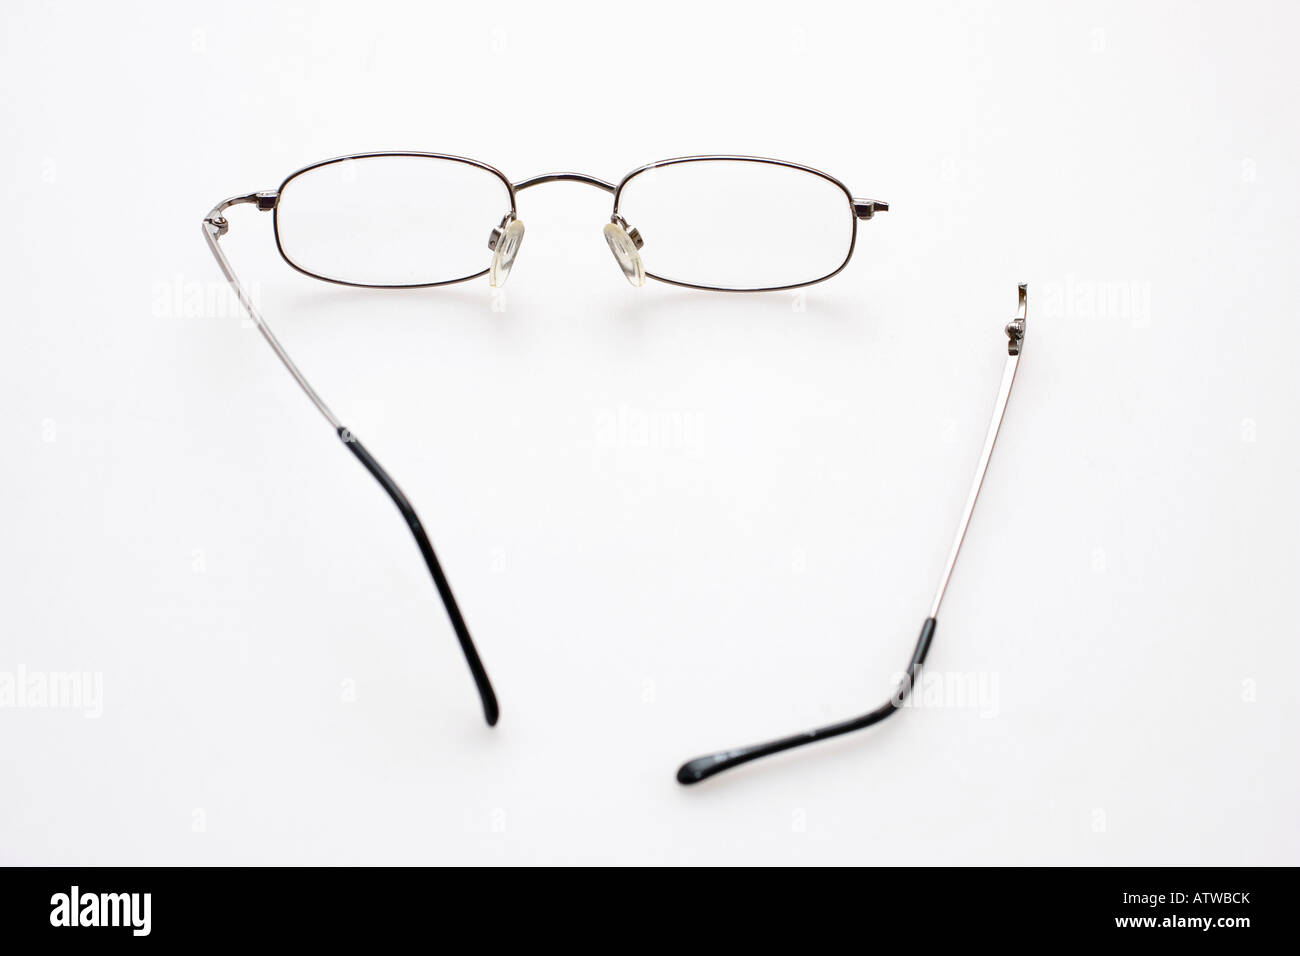 Un paio di occhiali con un braccio rotto su uno sfondo bianco Foto Stock